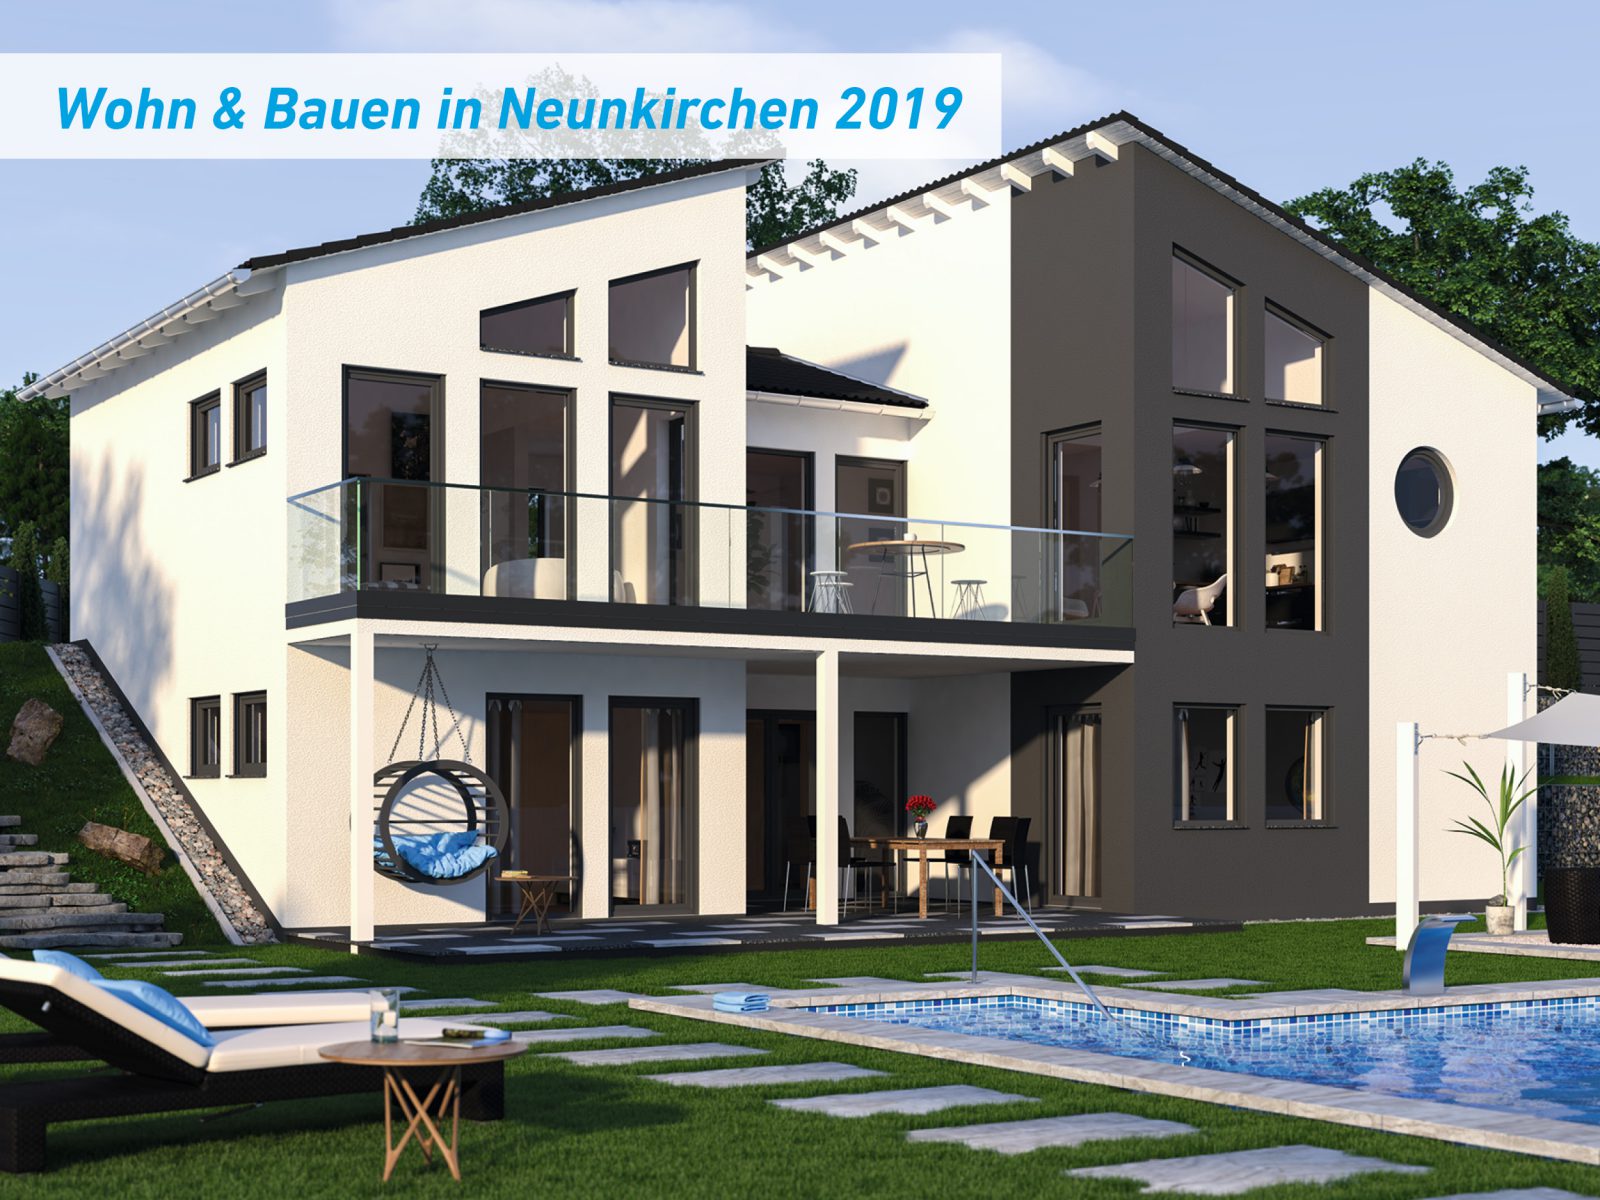 Wohn & Bauen in Neunkirchen 2019